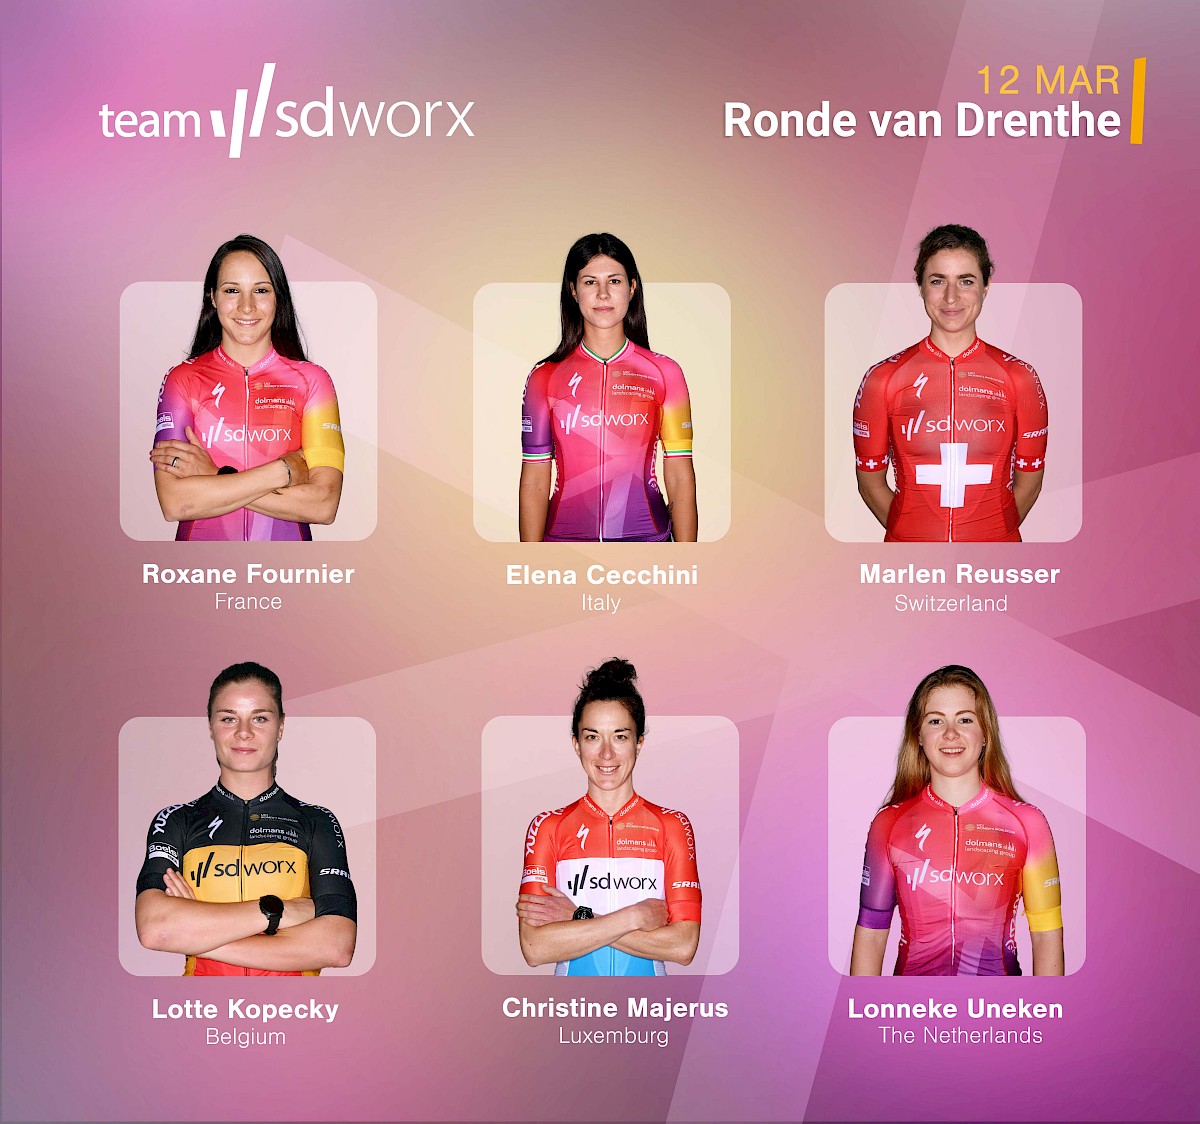 PREVIEW: Ronde van Drenthe